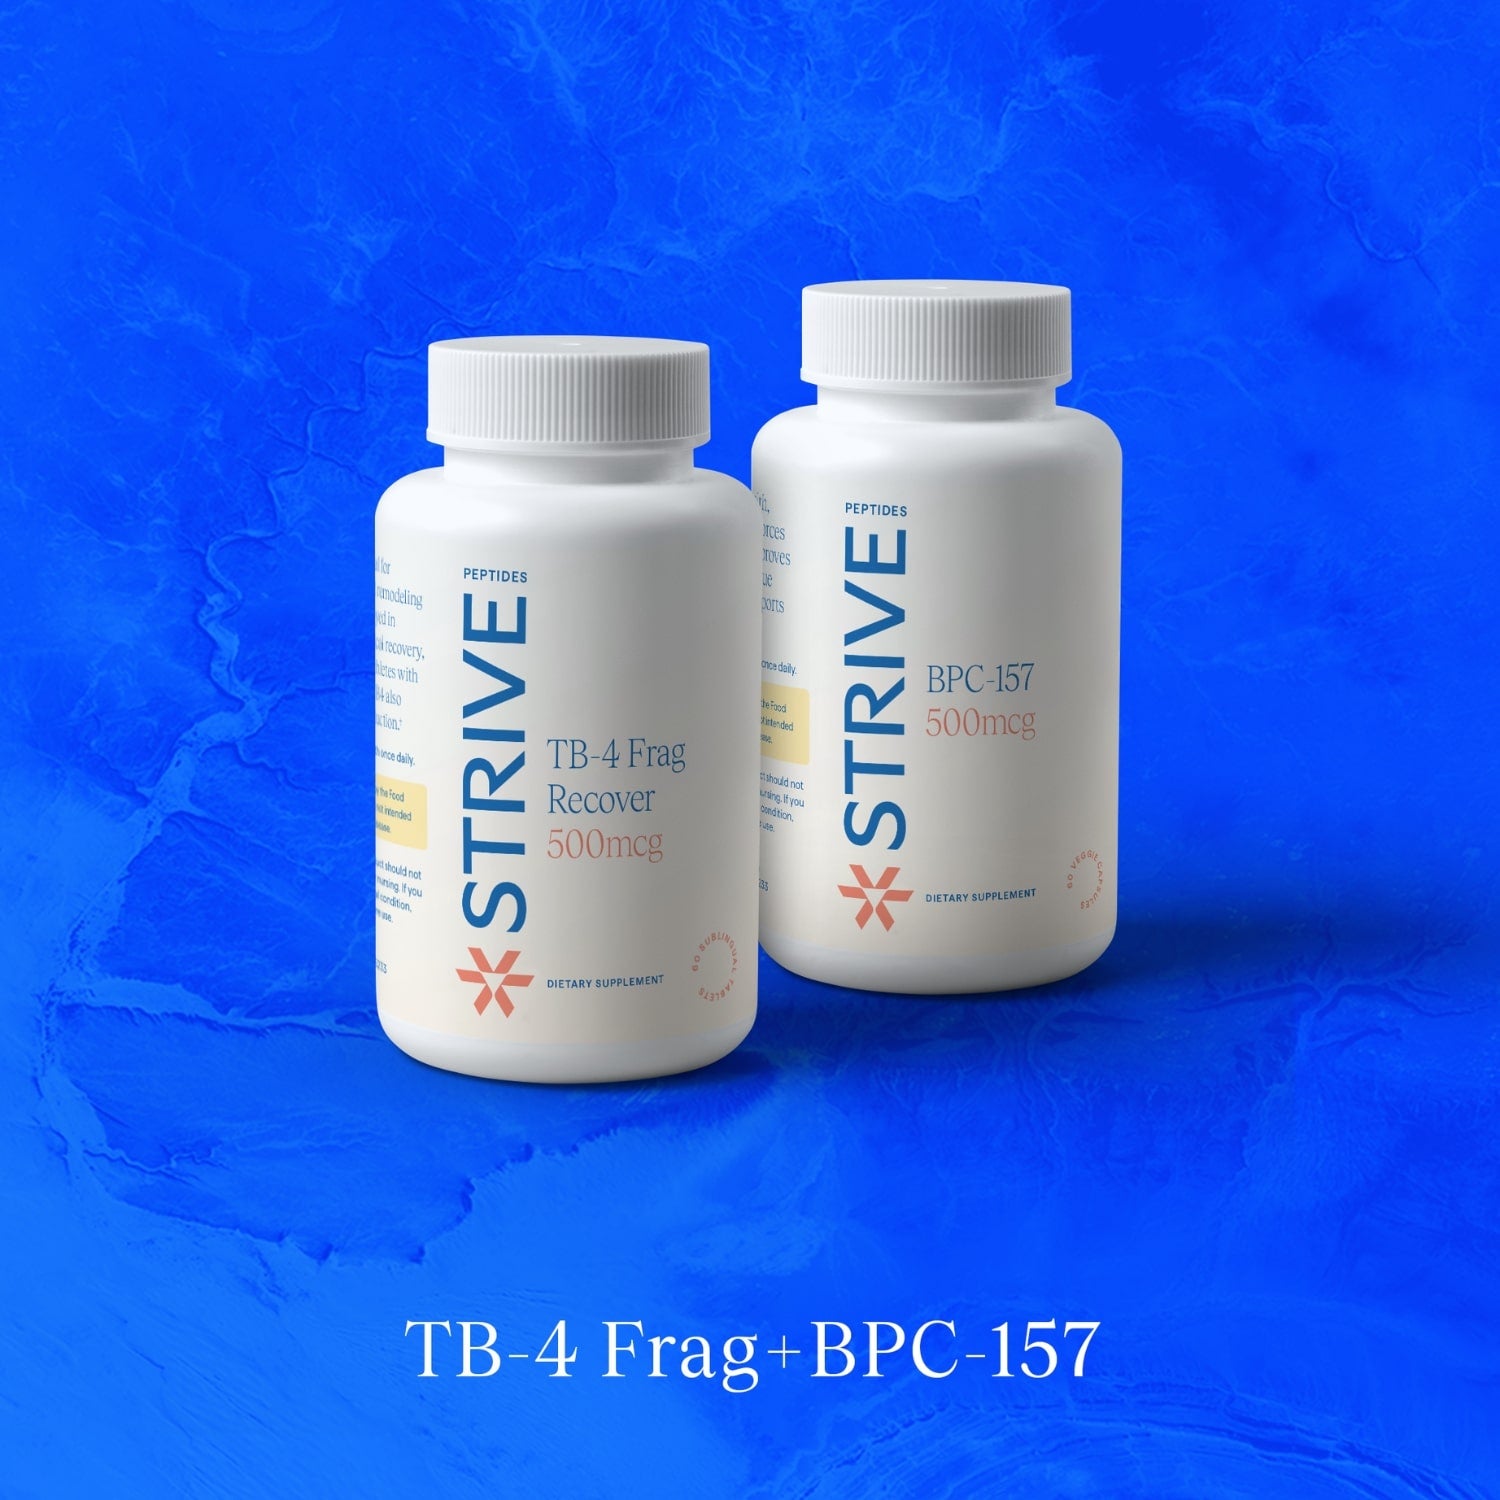 Two bottles of Strive Peptides bundling TB-4 Frag and BPC-157 bottles over a blue textured background